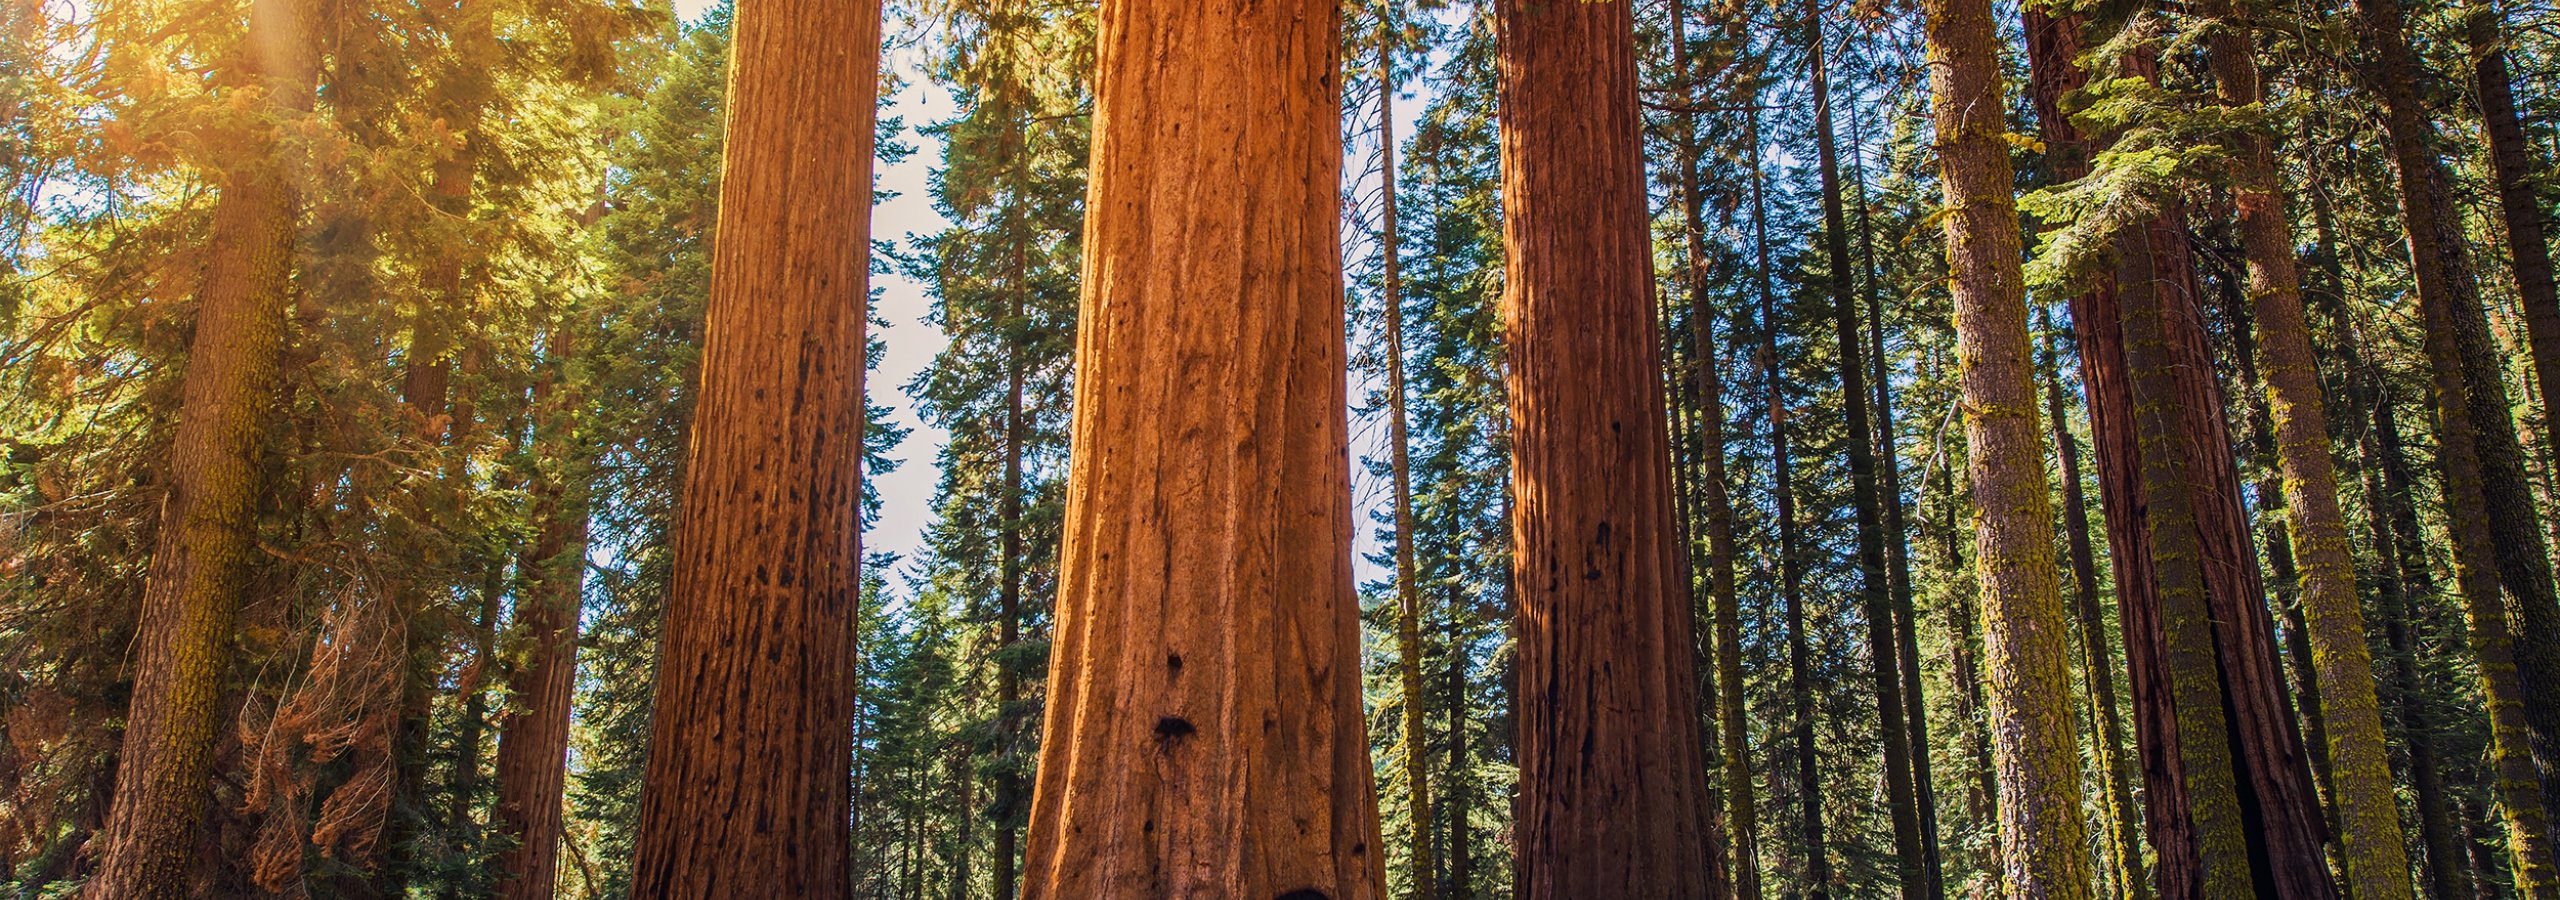 Redwoods smaller